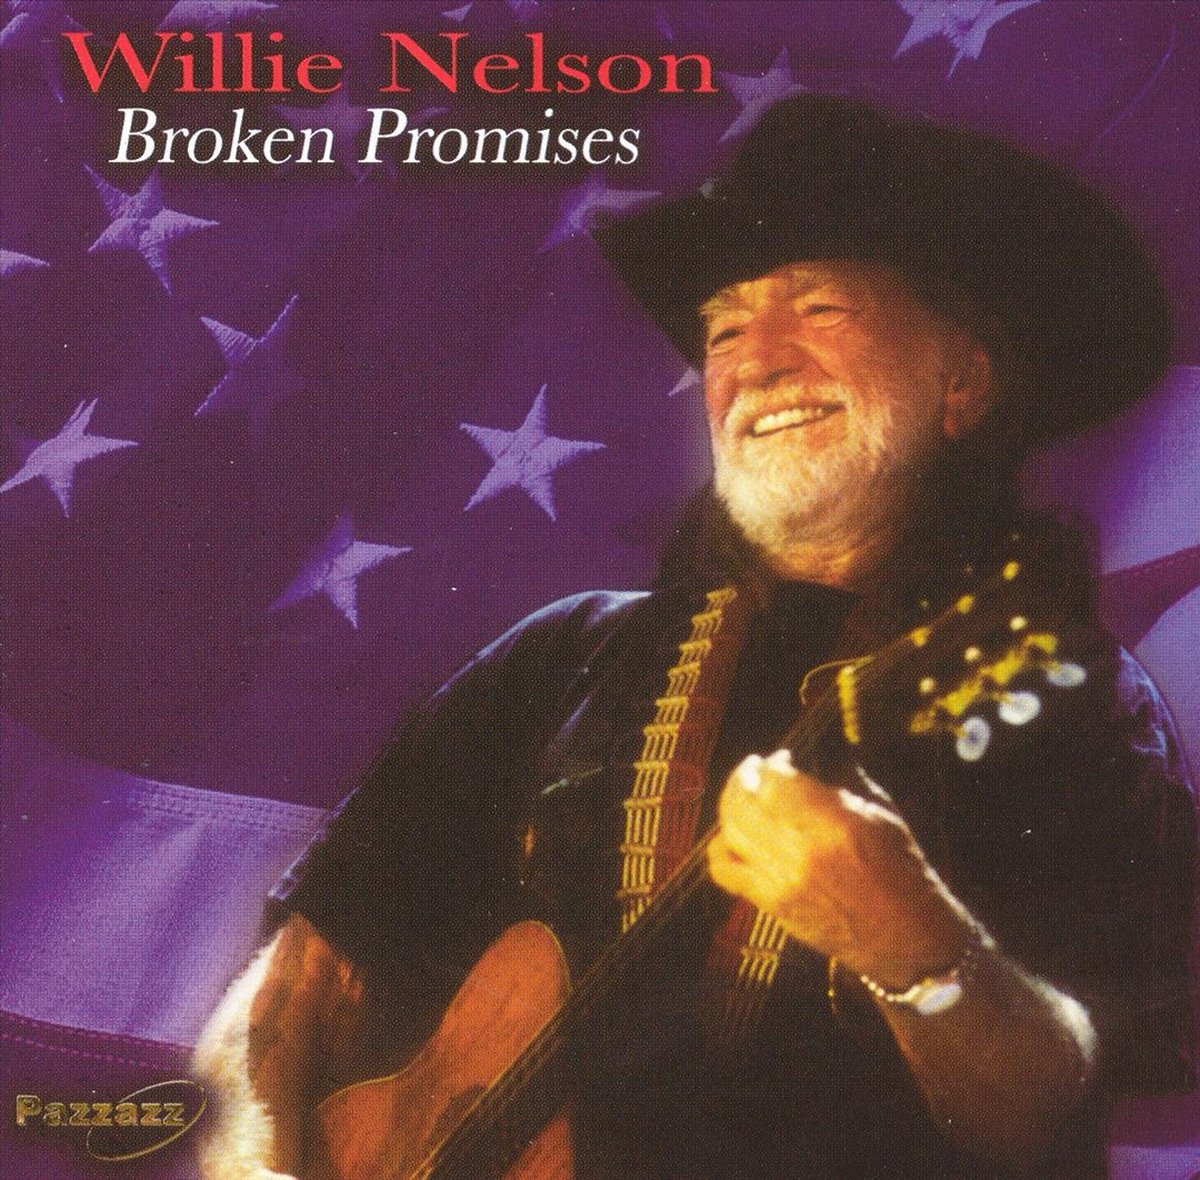 Willie Nelson - Broken Promises (CD) - Willie Nelson